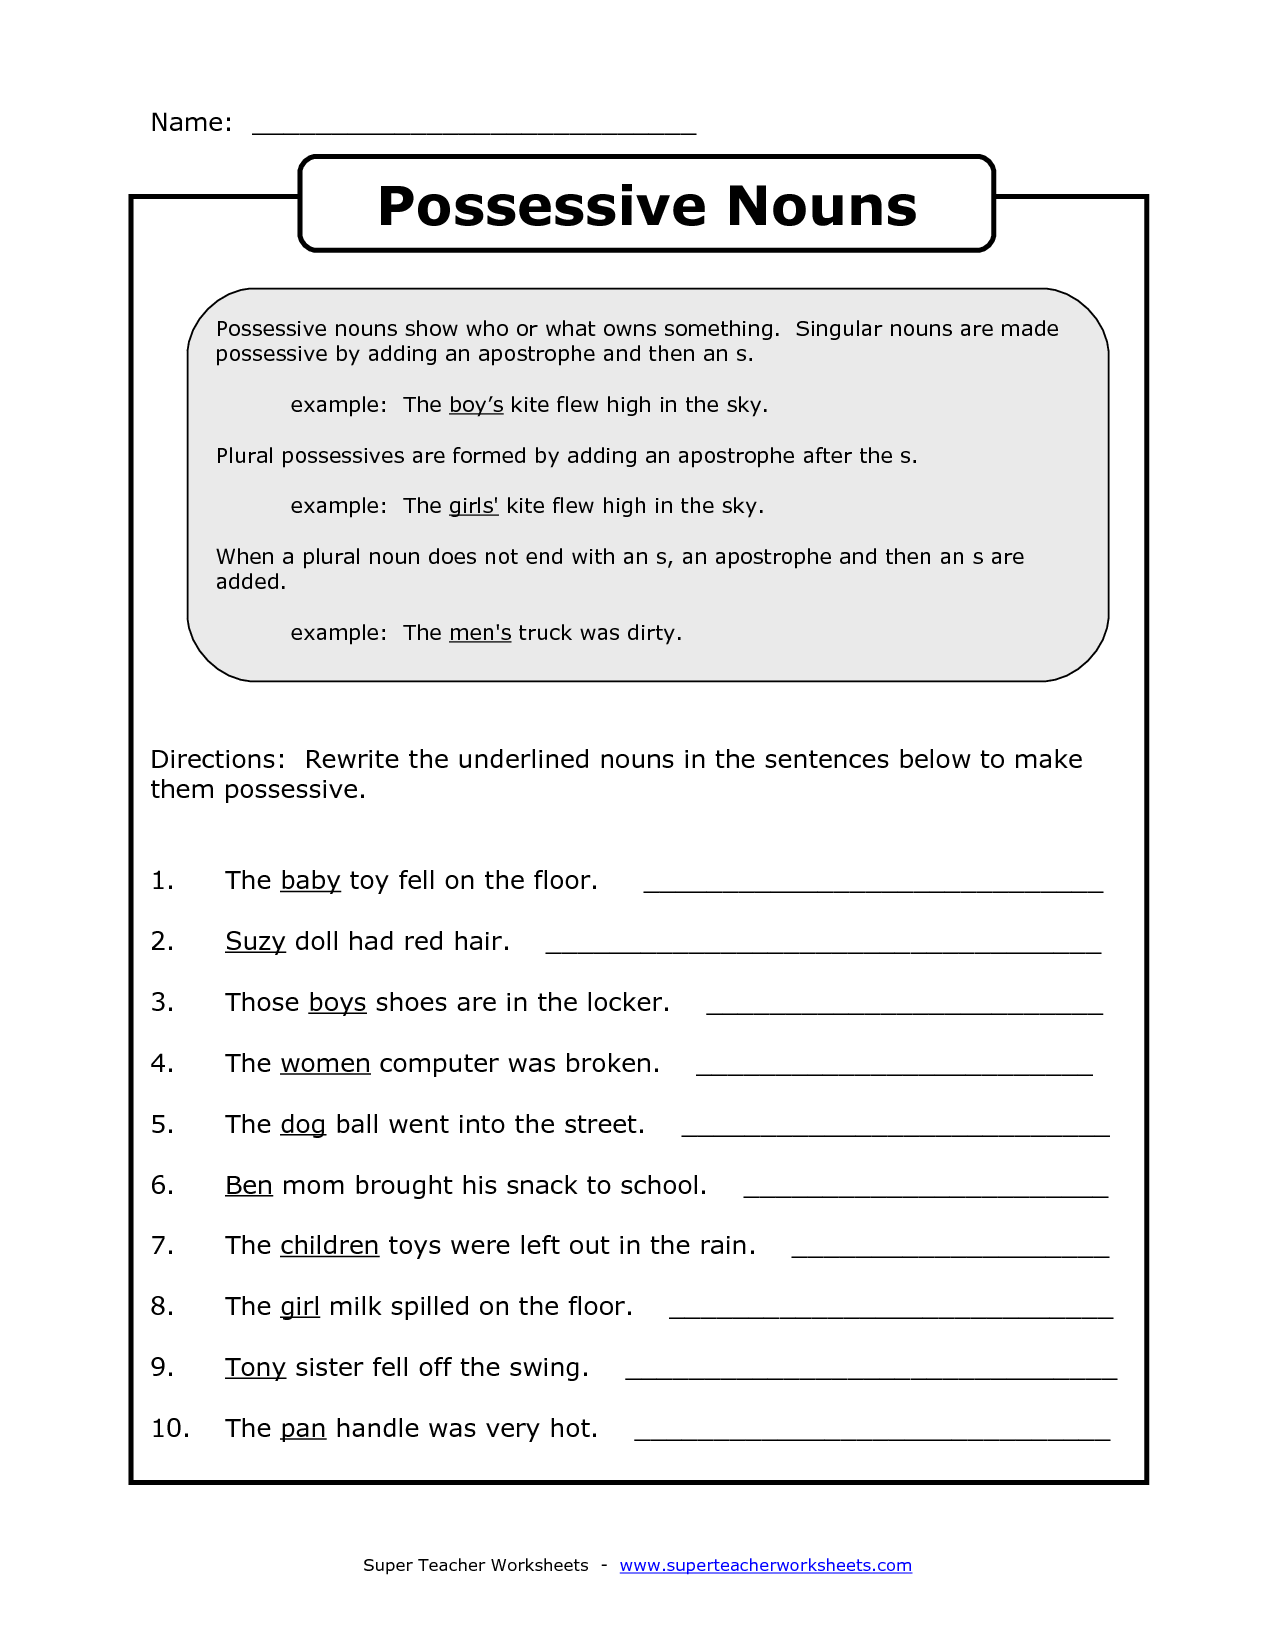 15 Best Images Of Possessive Nouns Worksheets 5th Grade Singular 